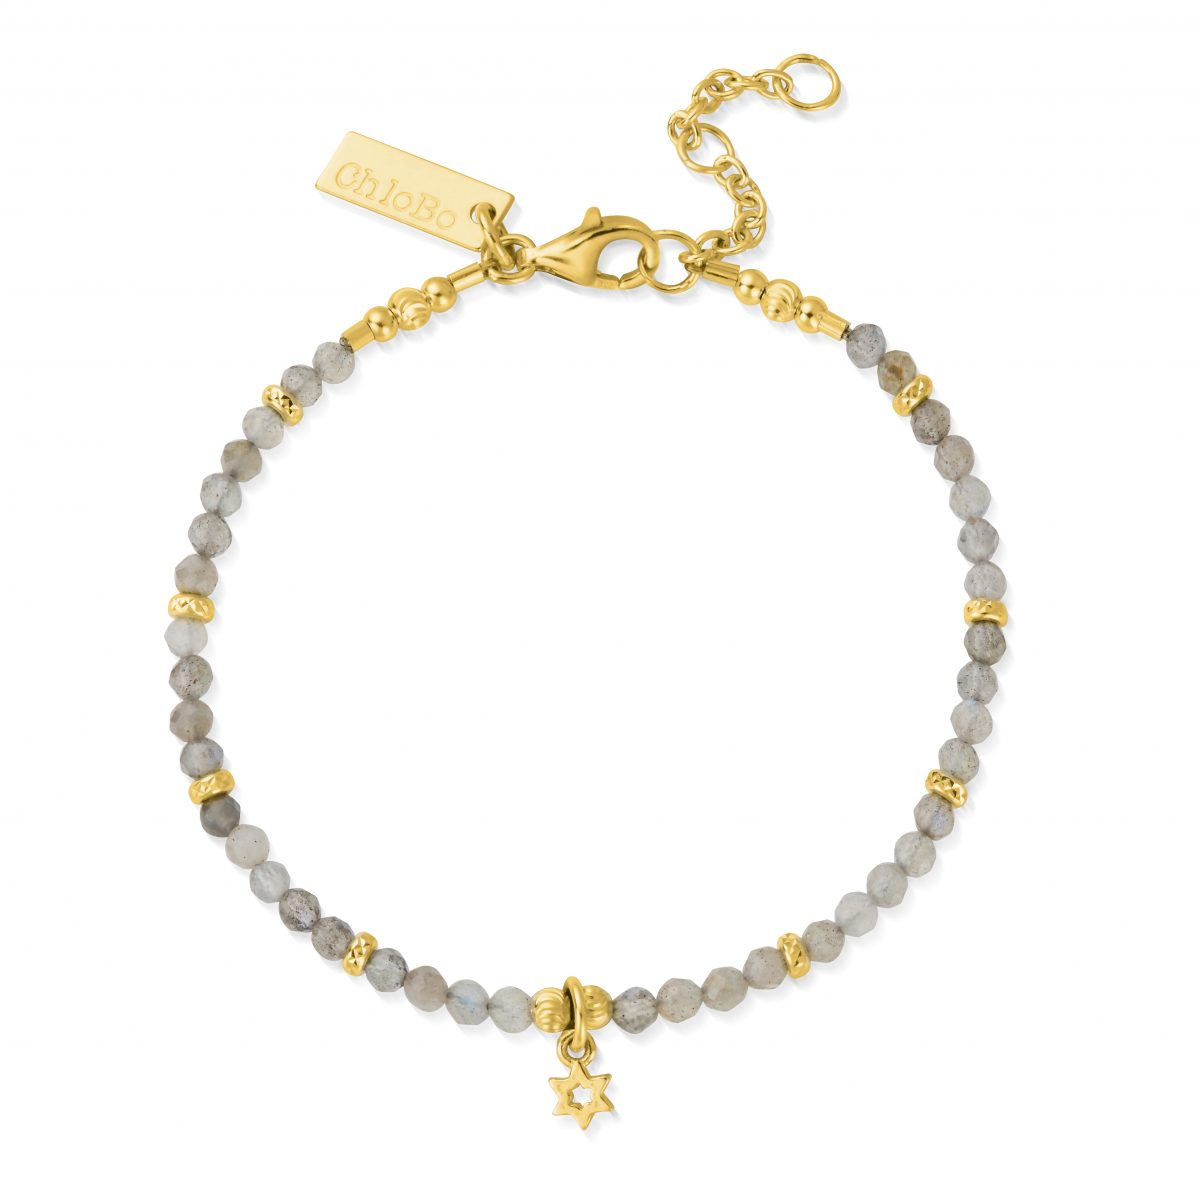 Chlobo Star Ruler Bracelet in Gold (GBLMC4037)